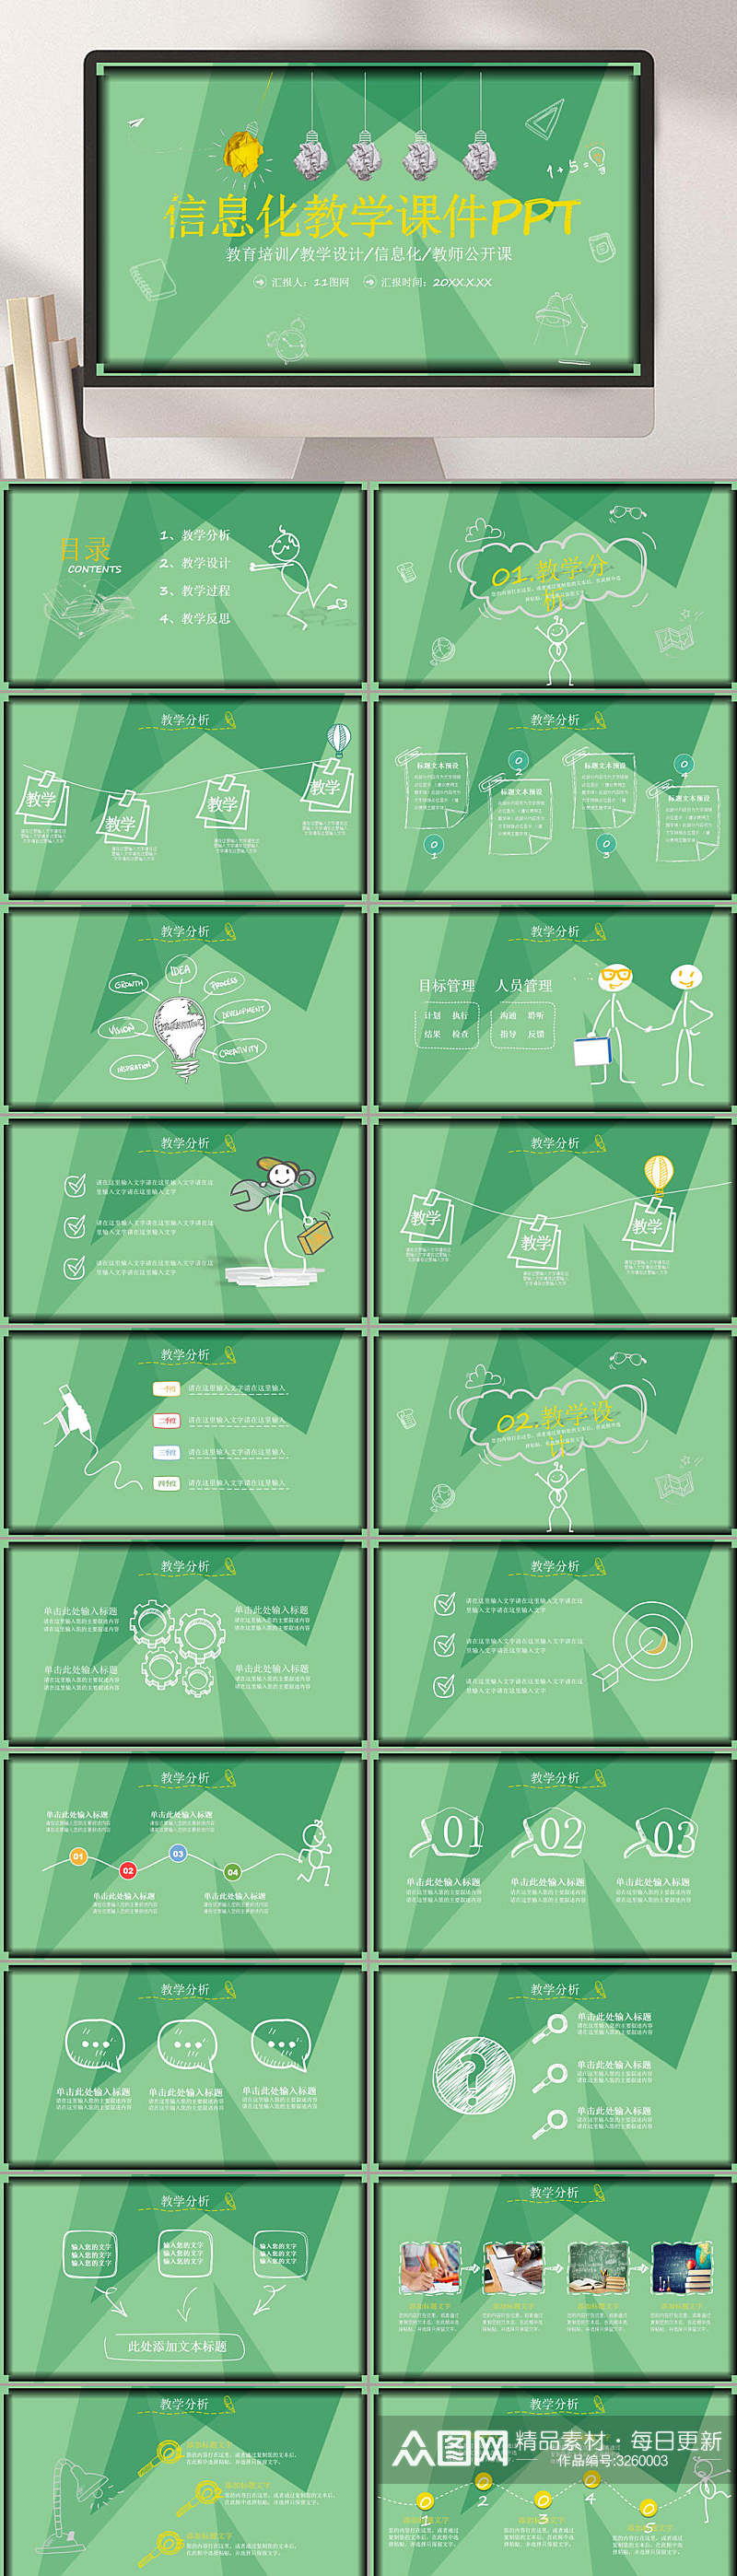 绿色简洁信息化教学设计PPT素材